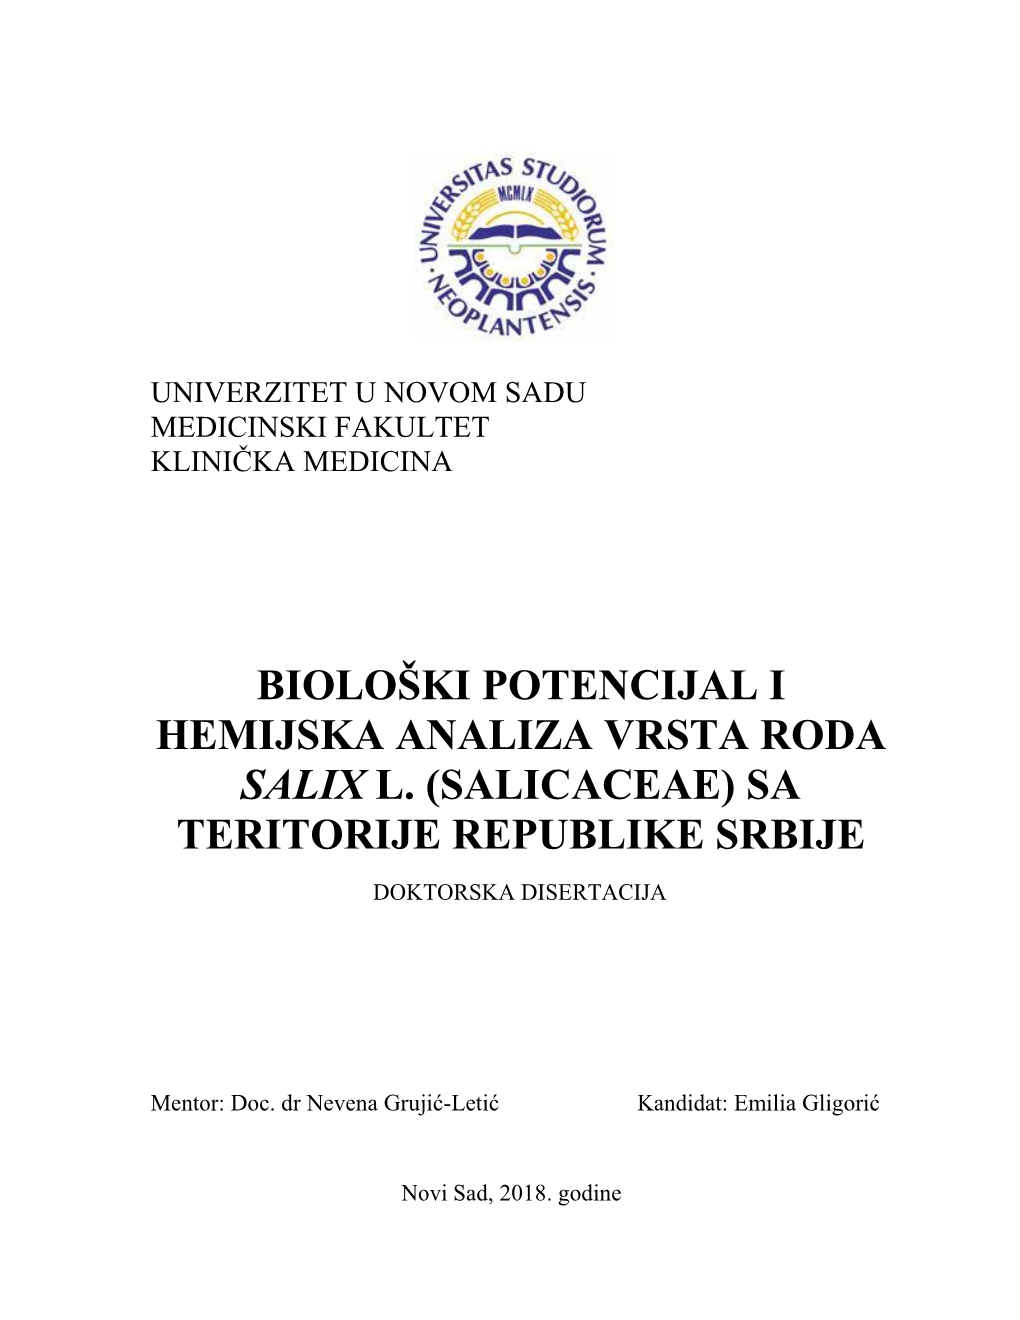 Biološki Potencijal I Hemijska Analiza Vrsta Roda Salix L. (Salicaceae) Sa Teritorije Republike Srbije